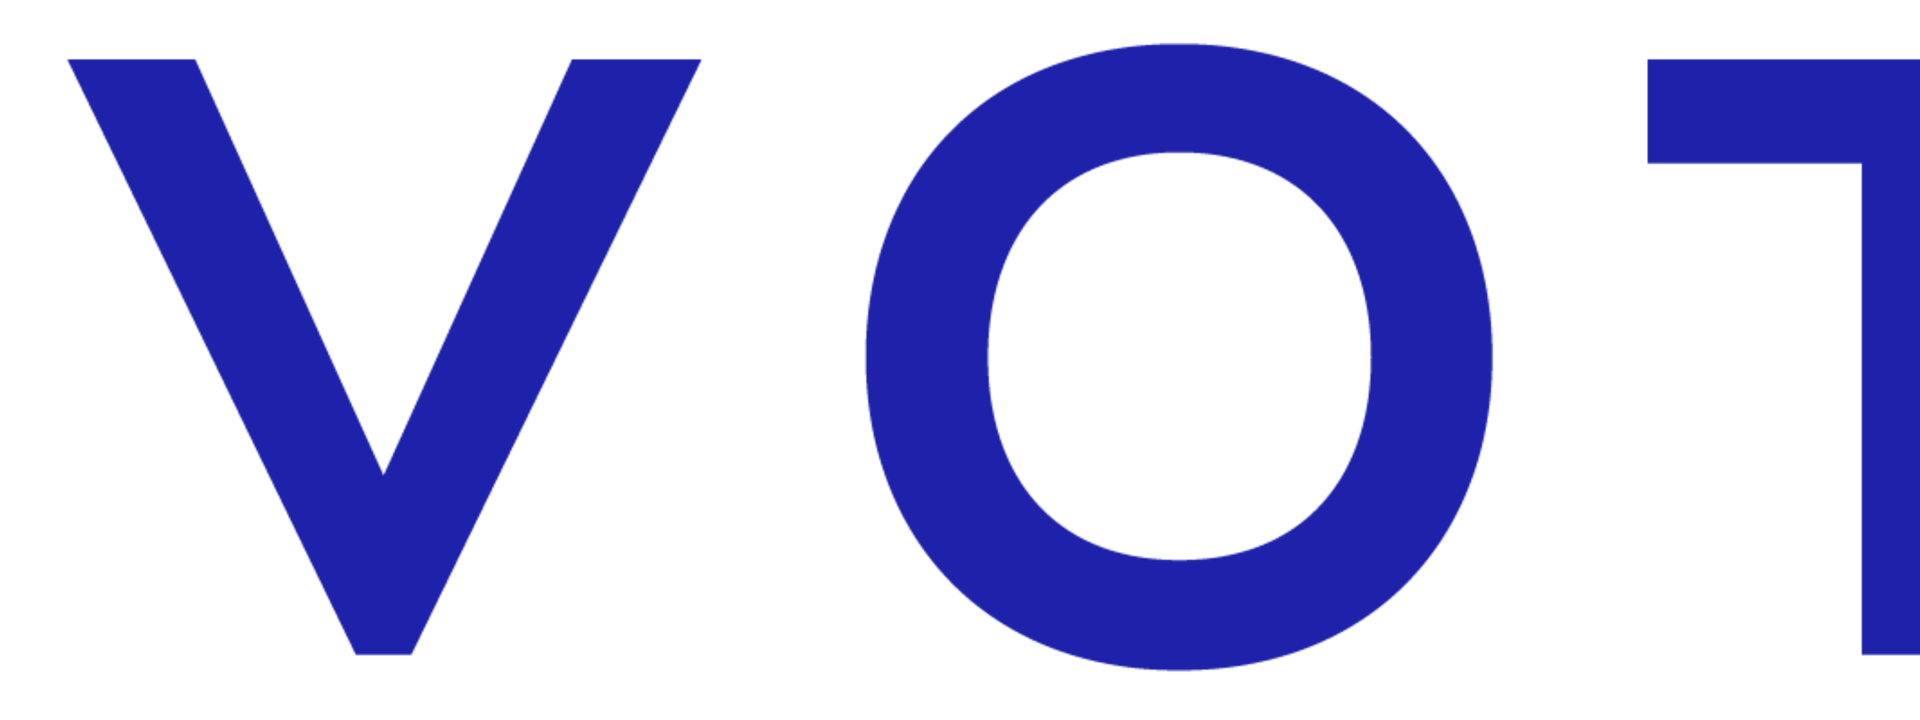 novotel_logo_2019_rvb.png